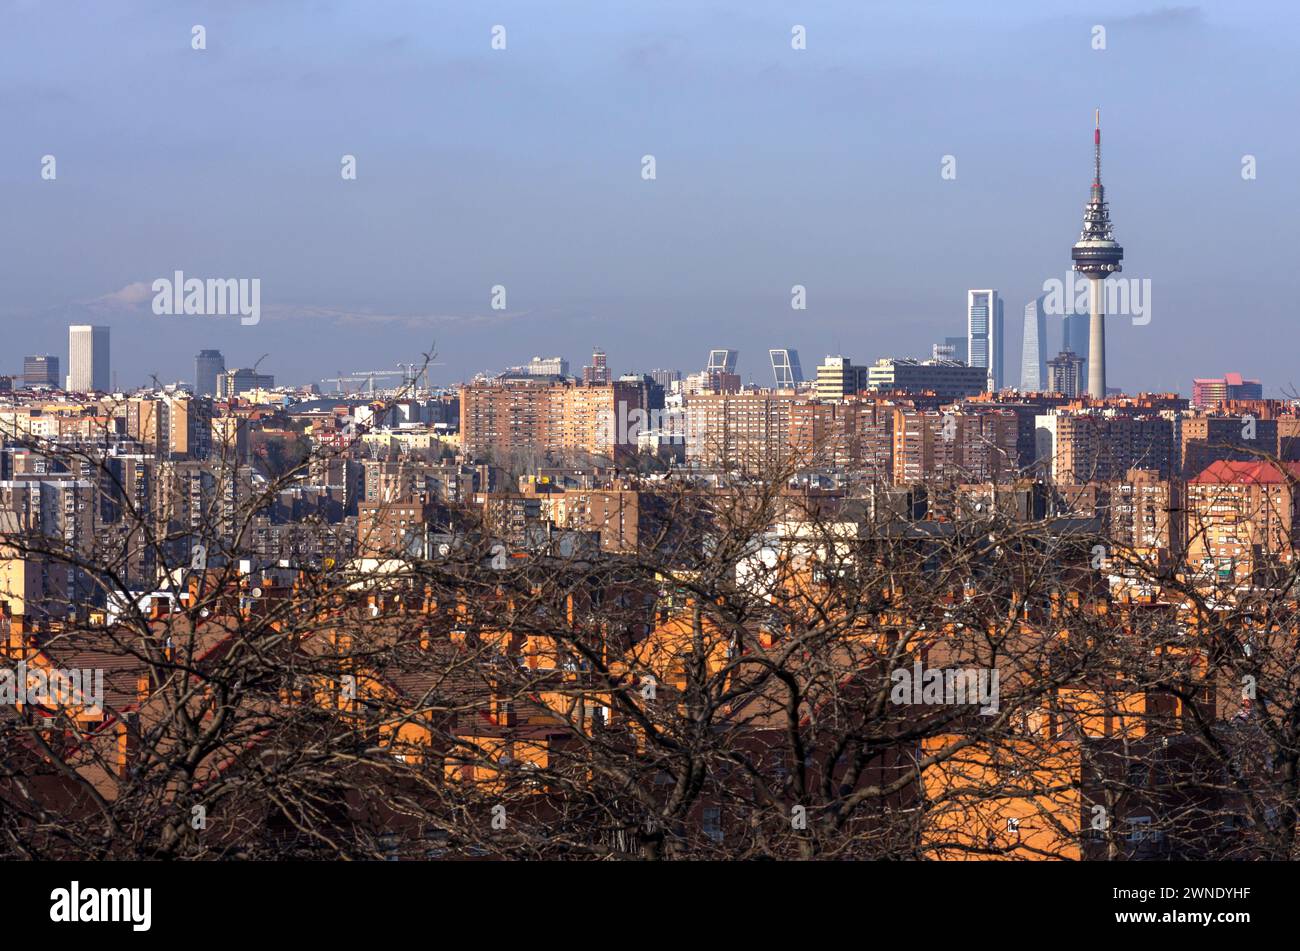 Vista de Madrid desde el Mirador Cerro del Tío Pío. Madrid. España Stock Photo